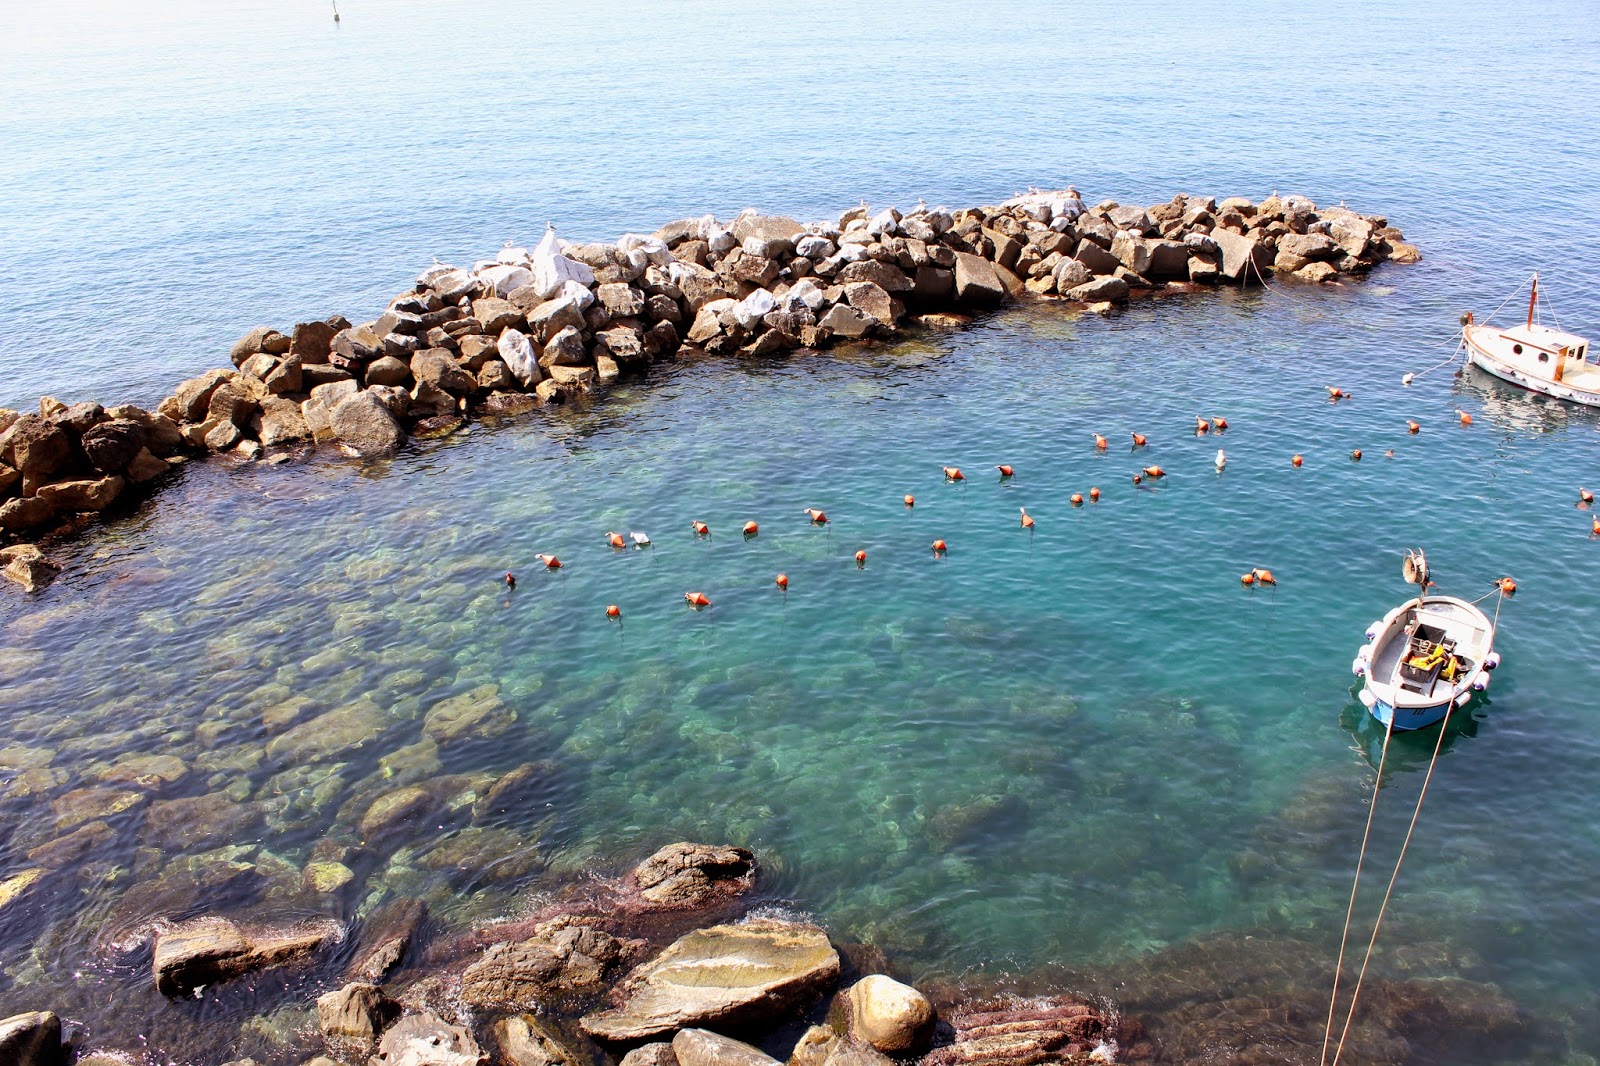 Riomaggiore in the Cinque Terre